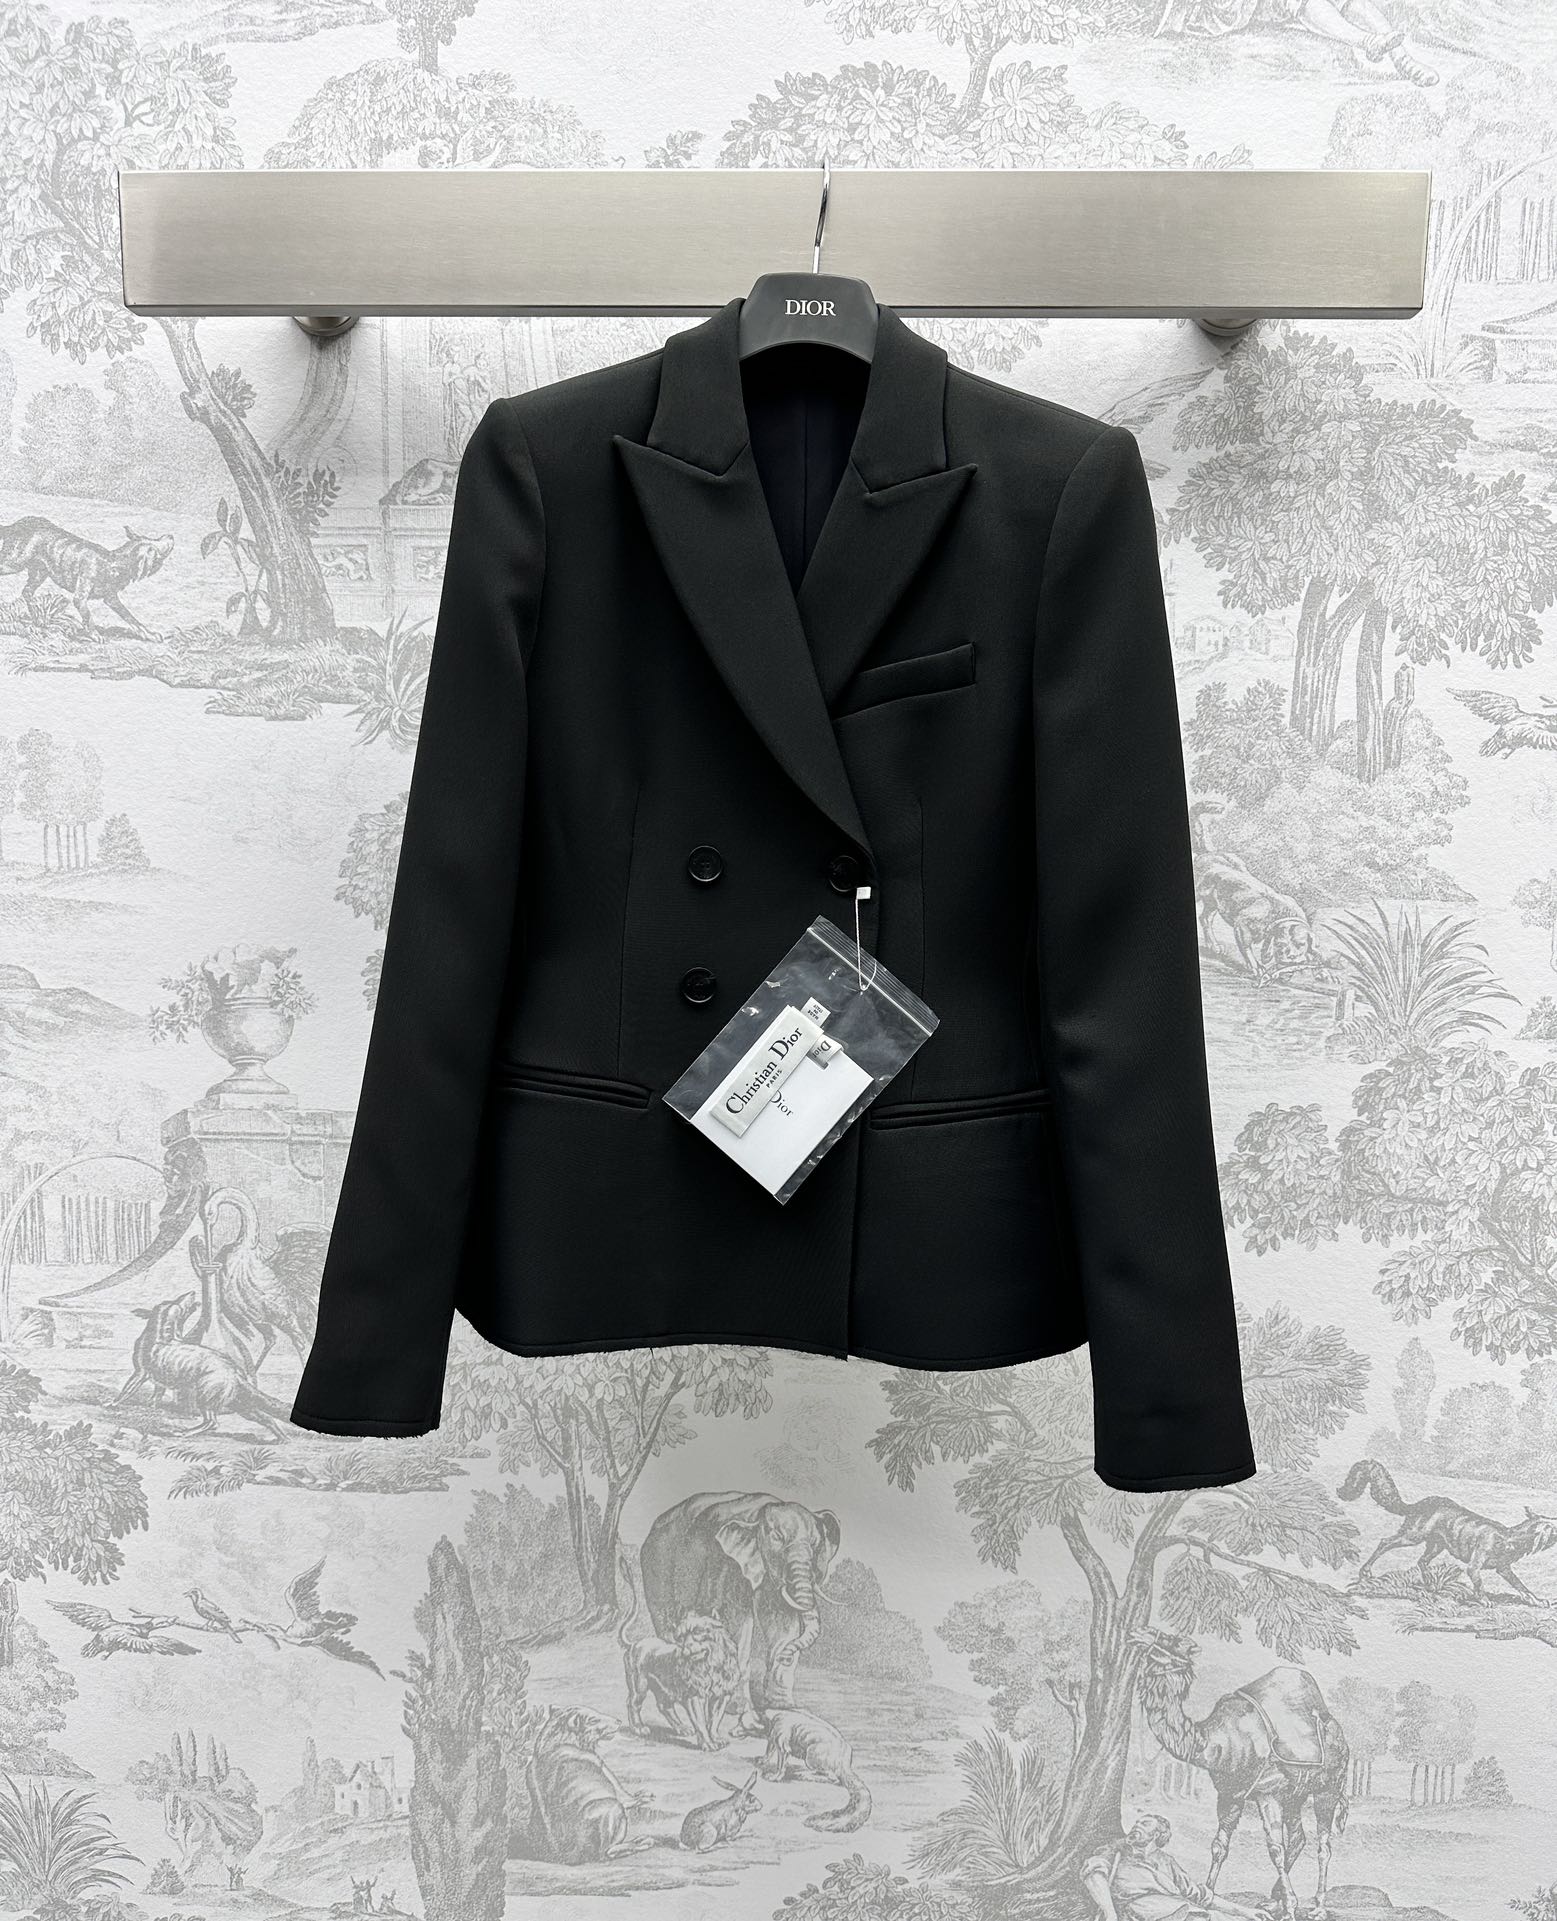 ディオールジャケットコピー スーツ トップス 柔らかい 高級感 日常服 ビジネス 通勤 ハンサム ブラック_1